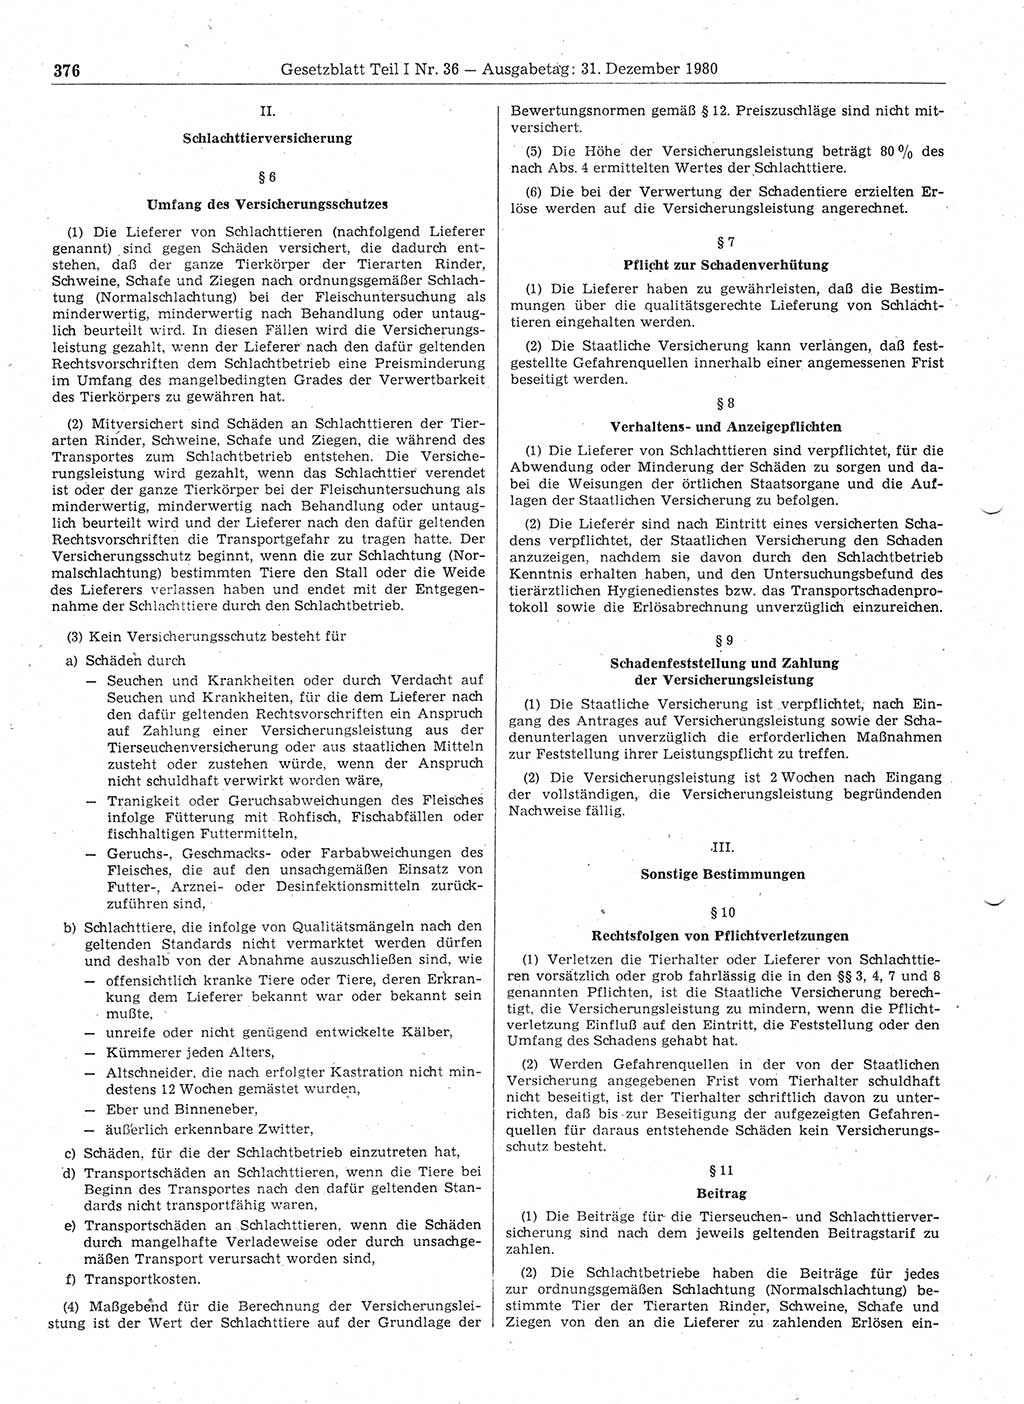 Gesetzblatt (GBl.) der Deutschen Demokratischen Republik (DDR) Teil Ⅰ 1980, Seite 376 (GBl. DDR Ⅰ 1980, S. 376)